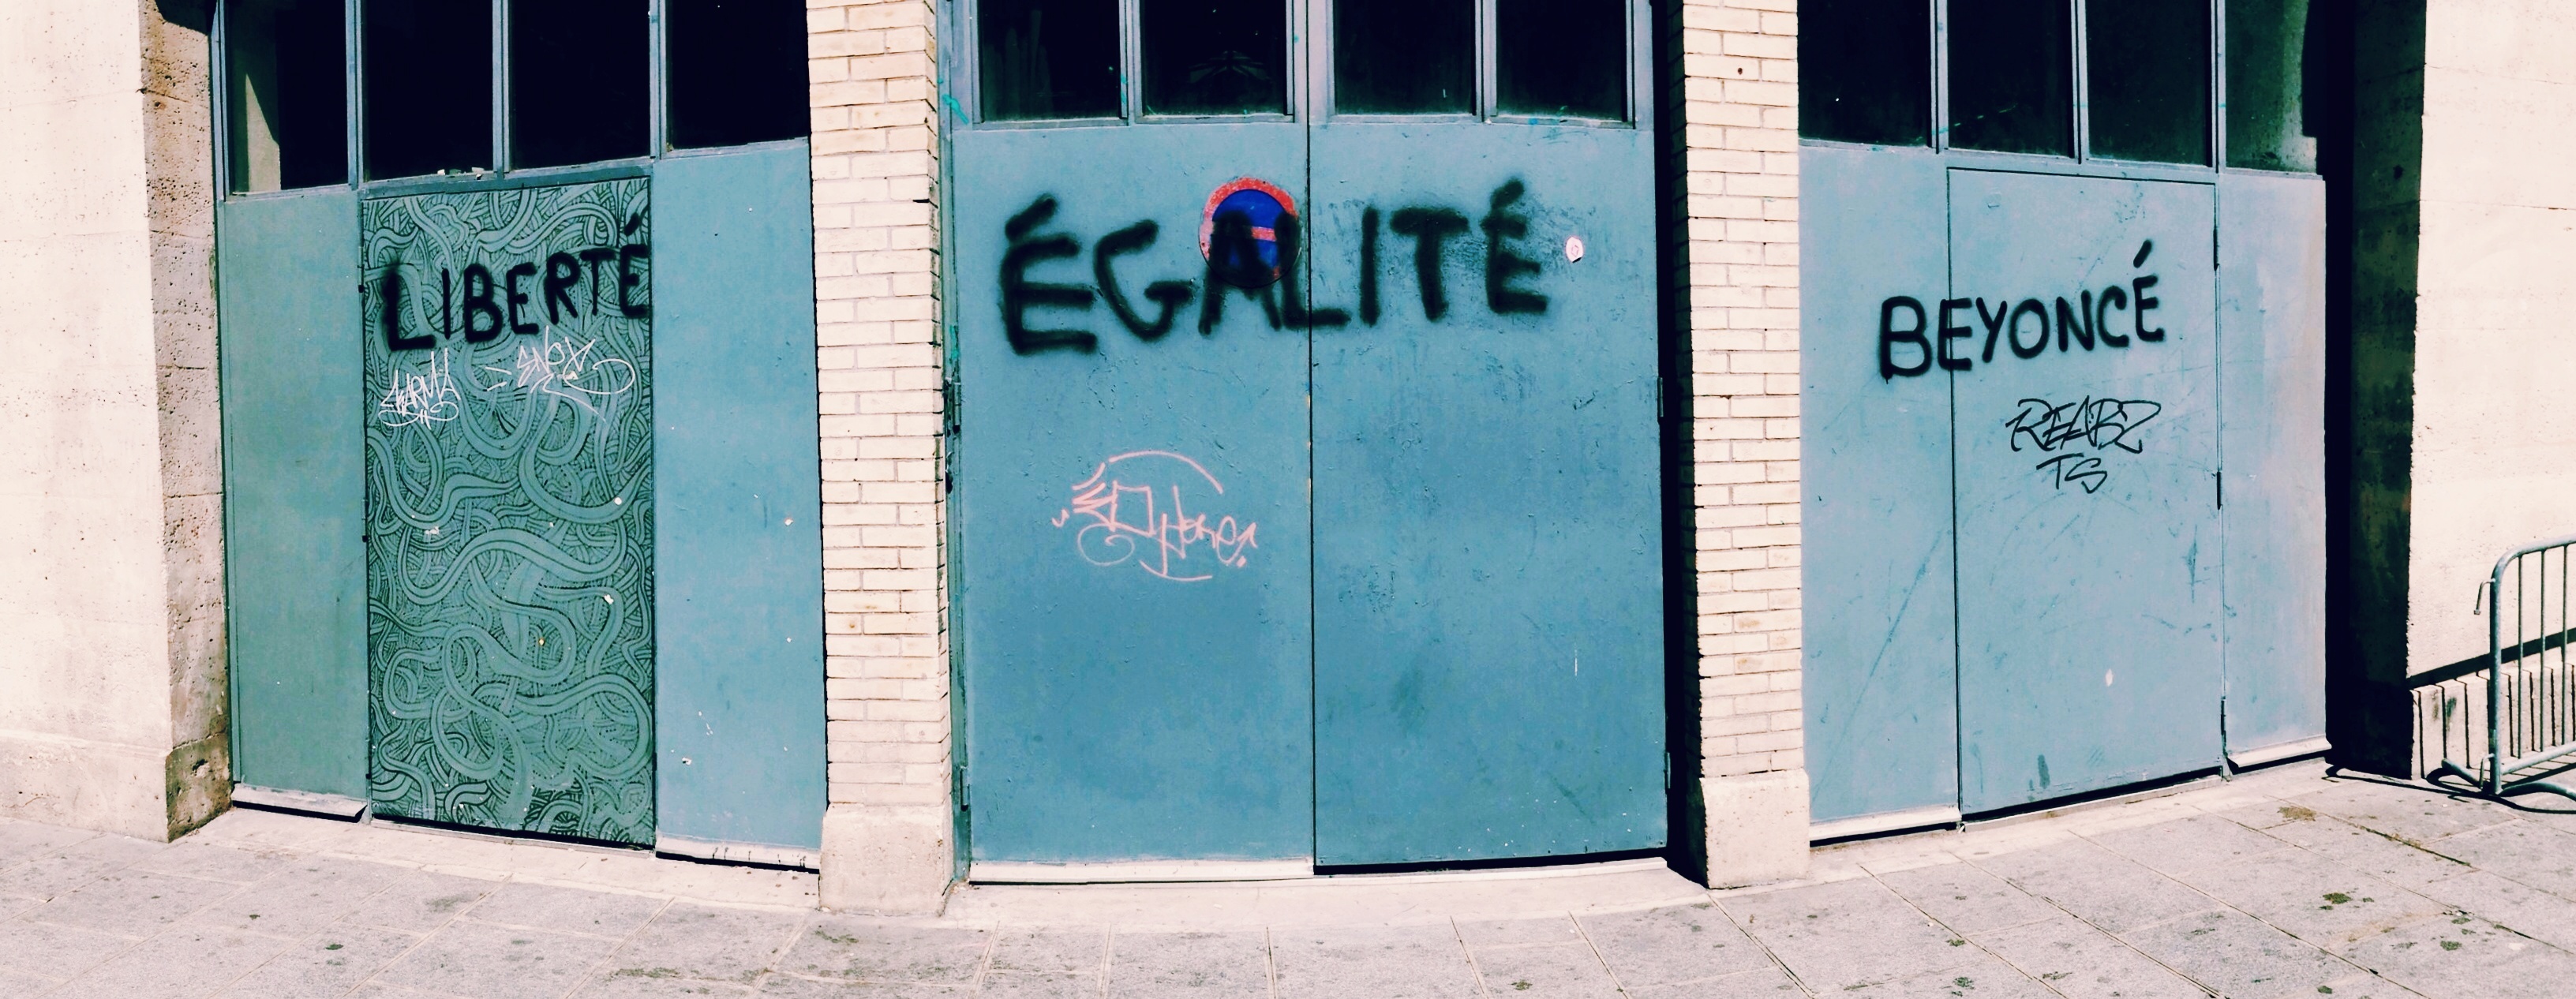 Photo de portes d'entrée de garages avec un tag liberté égalité beyoncé